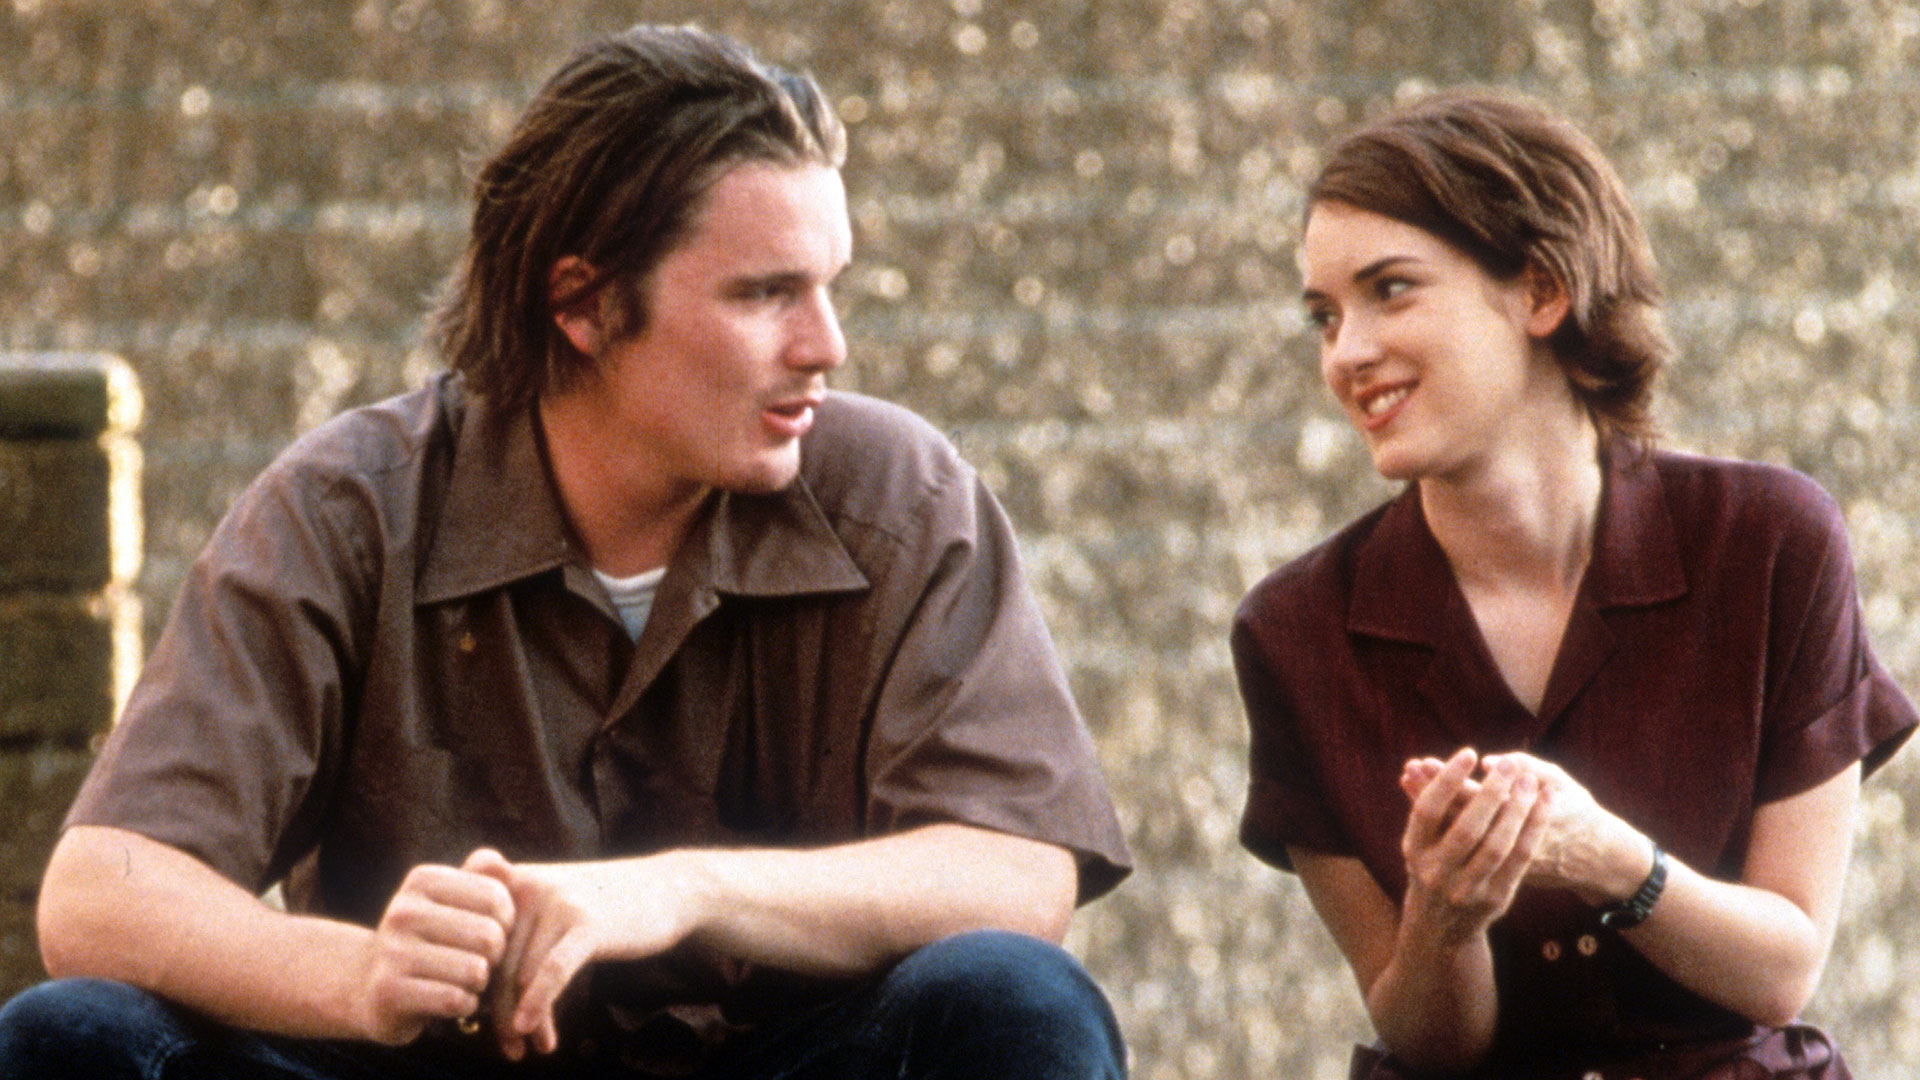 Ethan Hawke con Winona Ryder en la película "Reality Bites" de 1994, que marcó la juventud de muchos. (Universal/Getty Images)